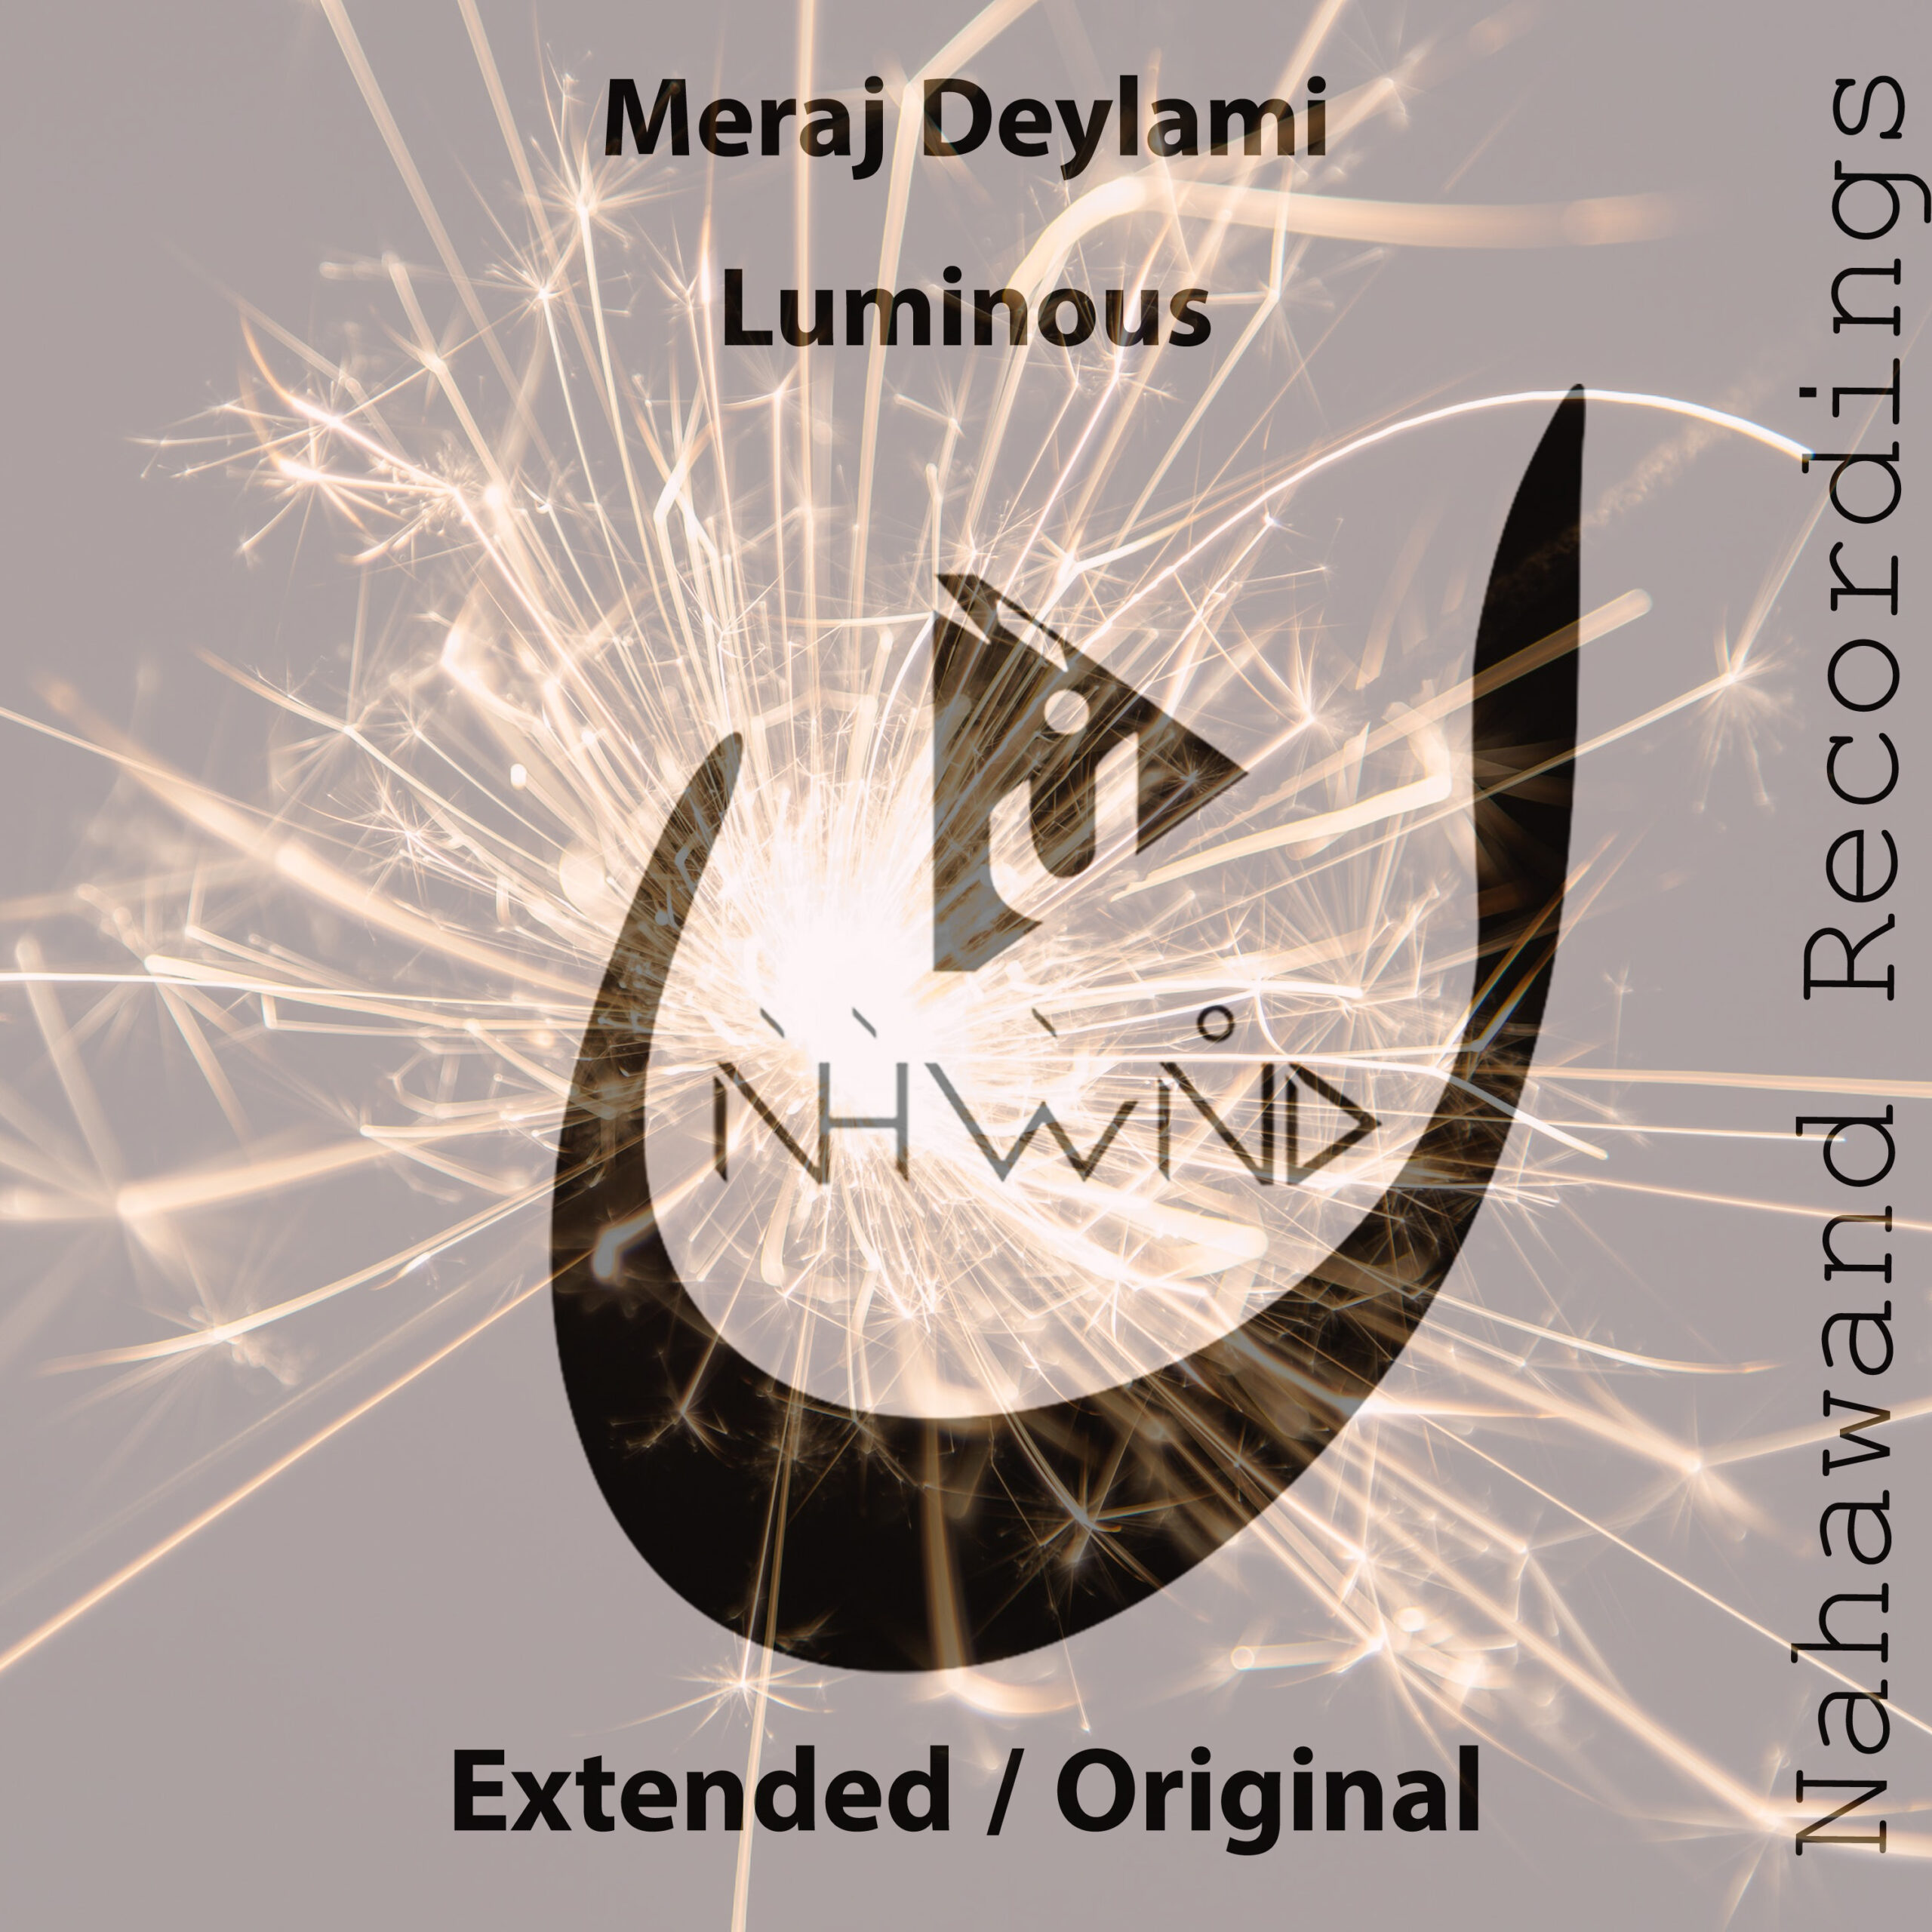 Meraj Deylami presents Luminous on Nahawand Recordings